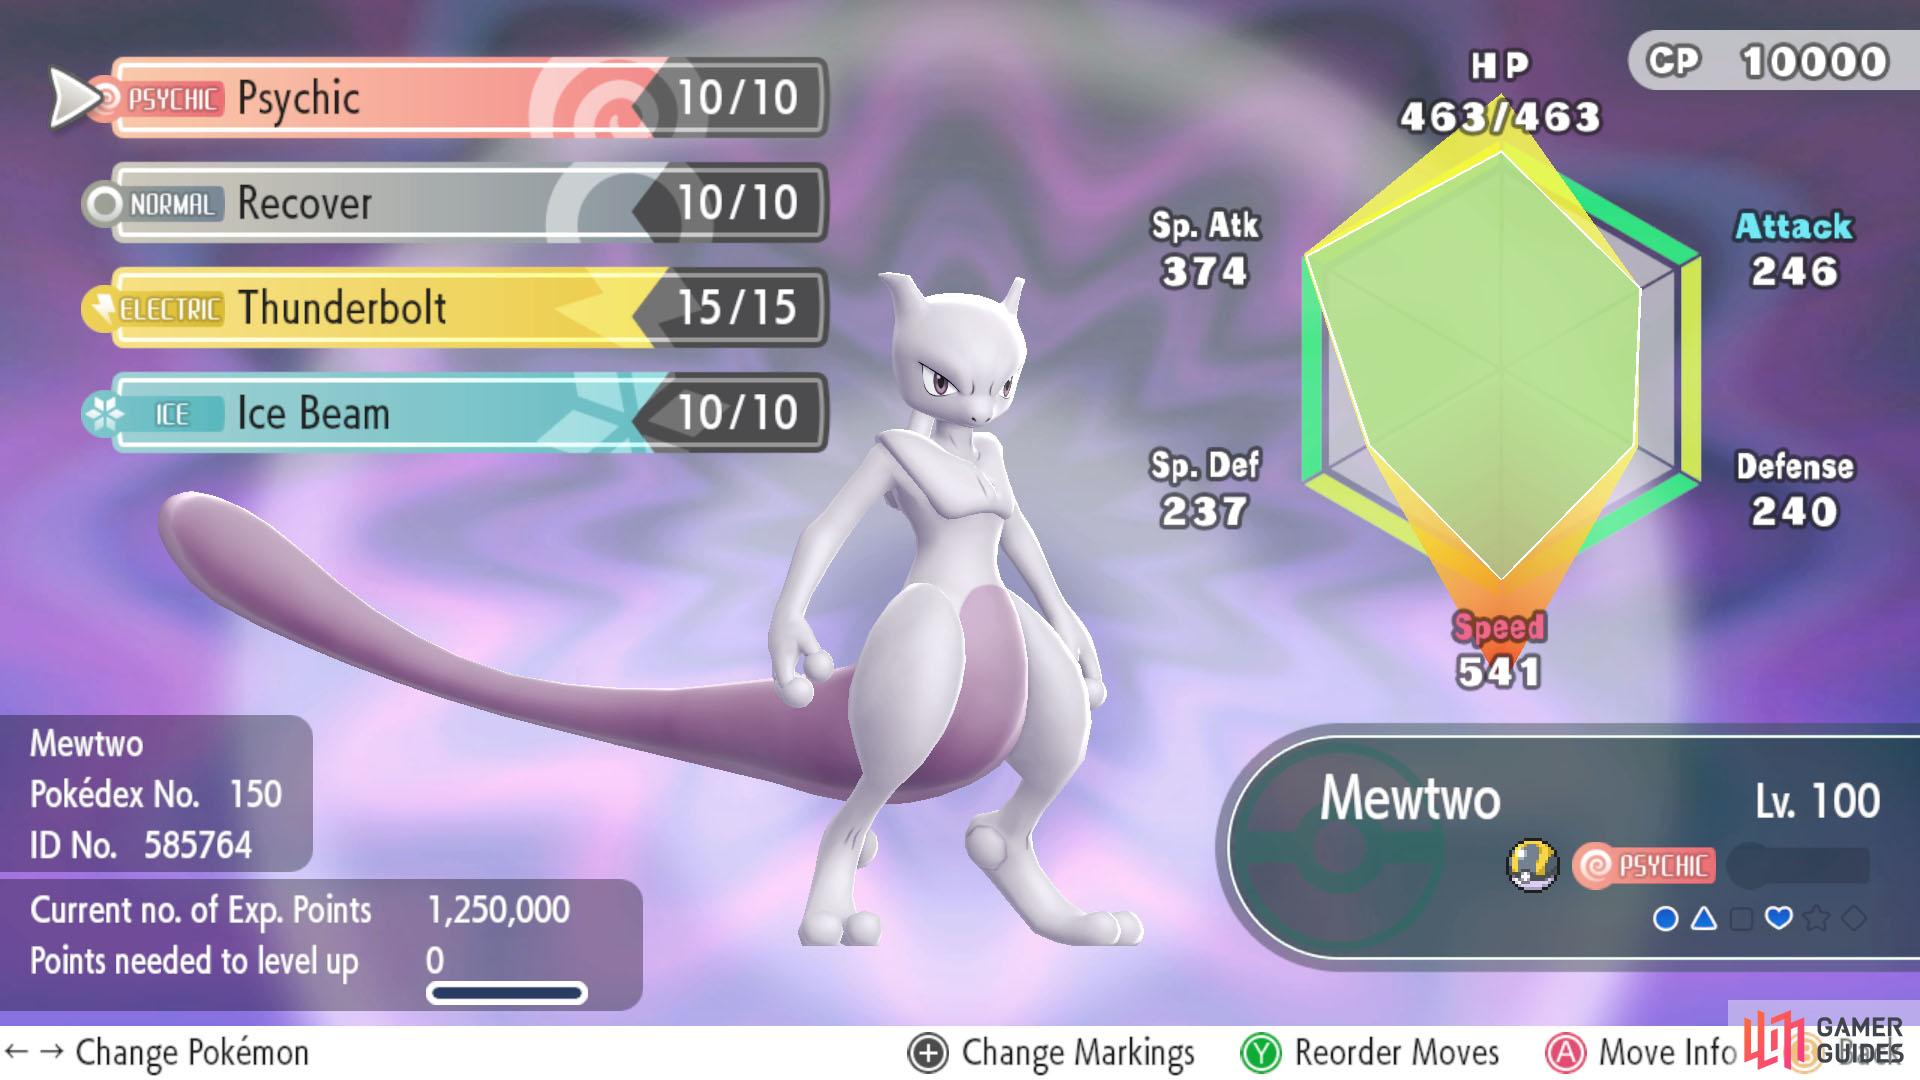 Pokemon 4150 Mewtwo Armor Pokedex: Evolution, Moves, Location, Stats